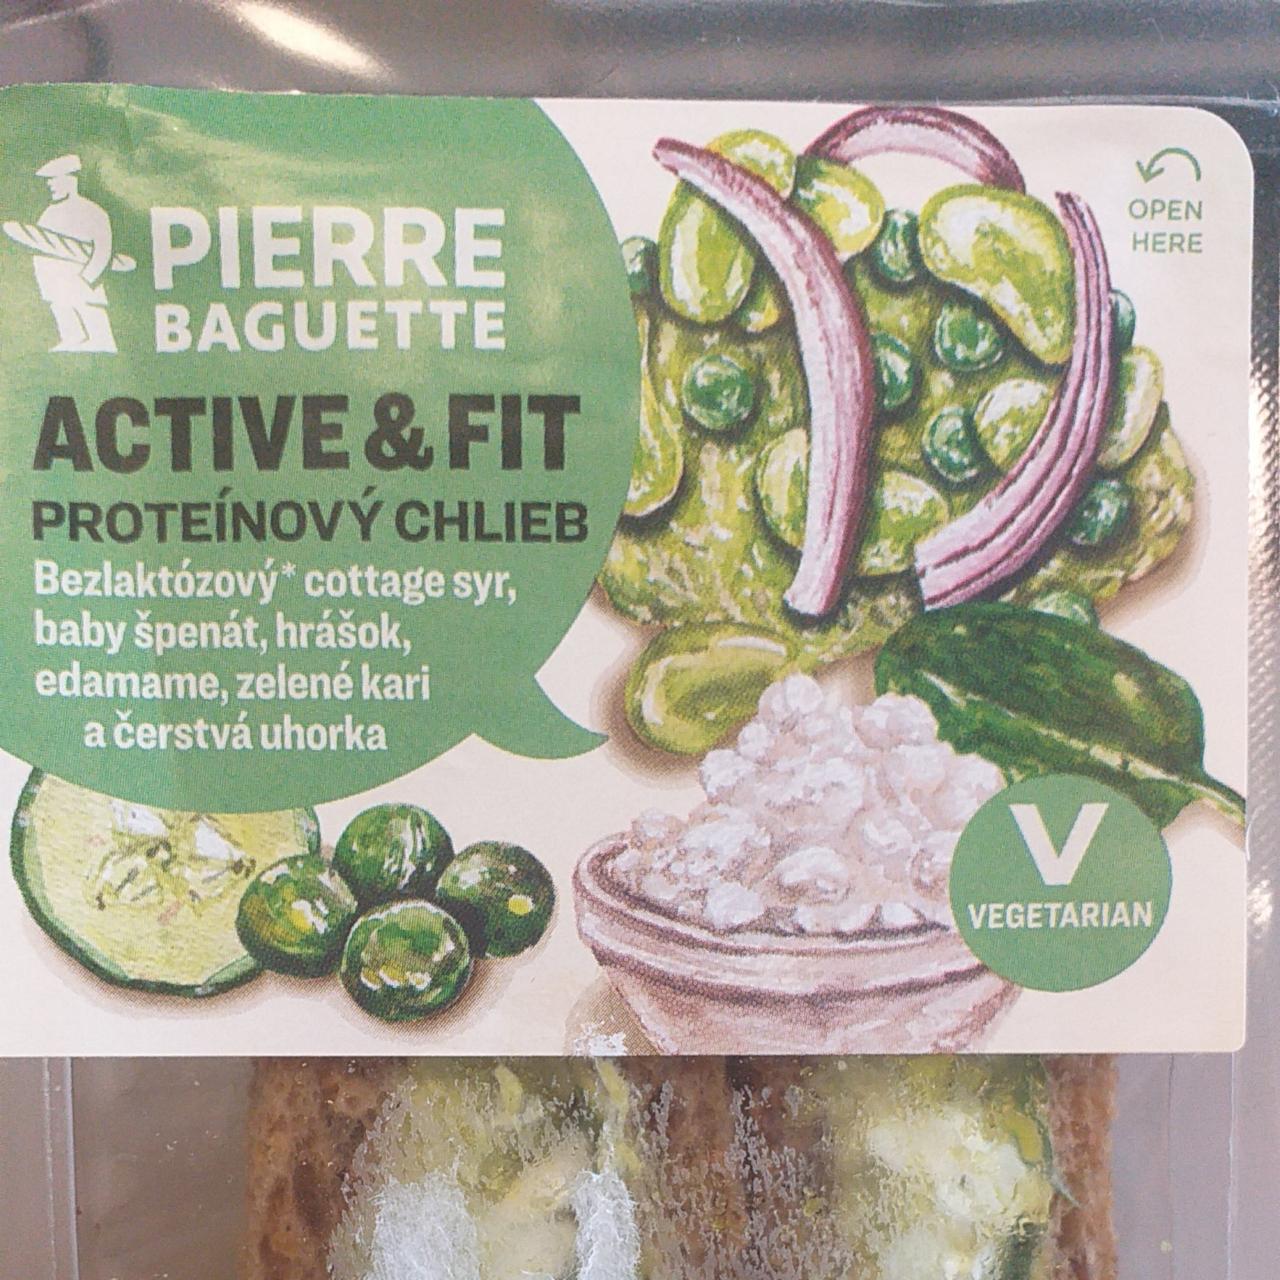 Fotografie - Active & fit Proteínový chlieb Vegetarian Pierre Baguette